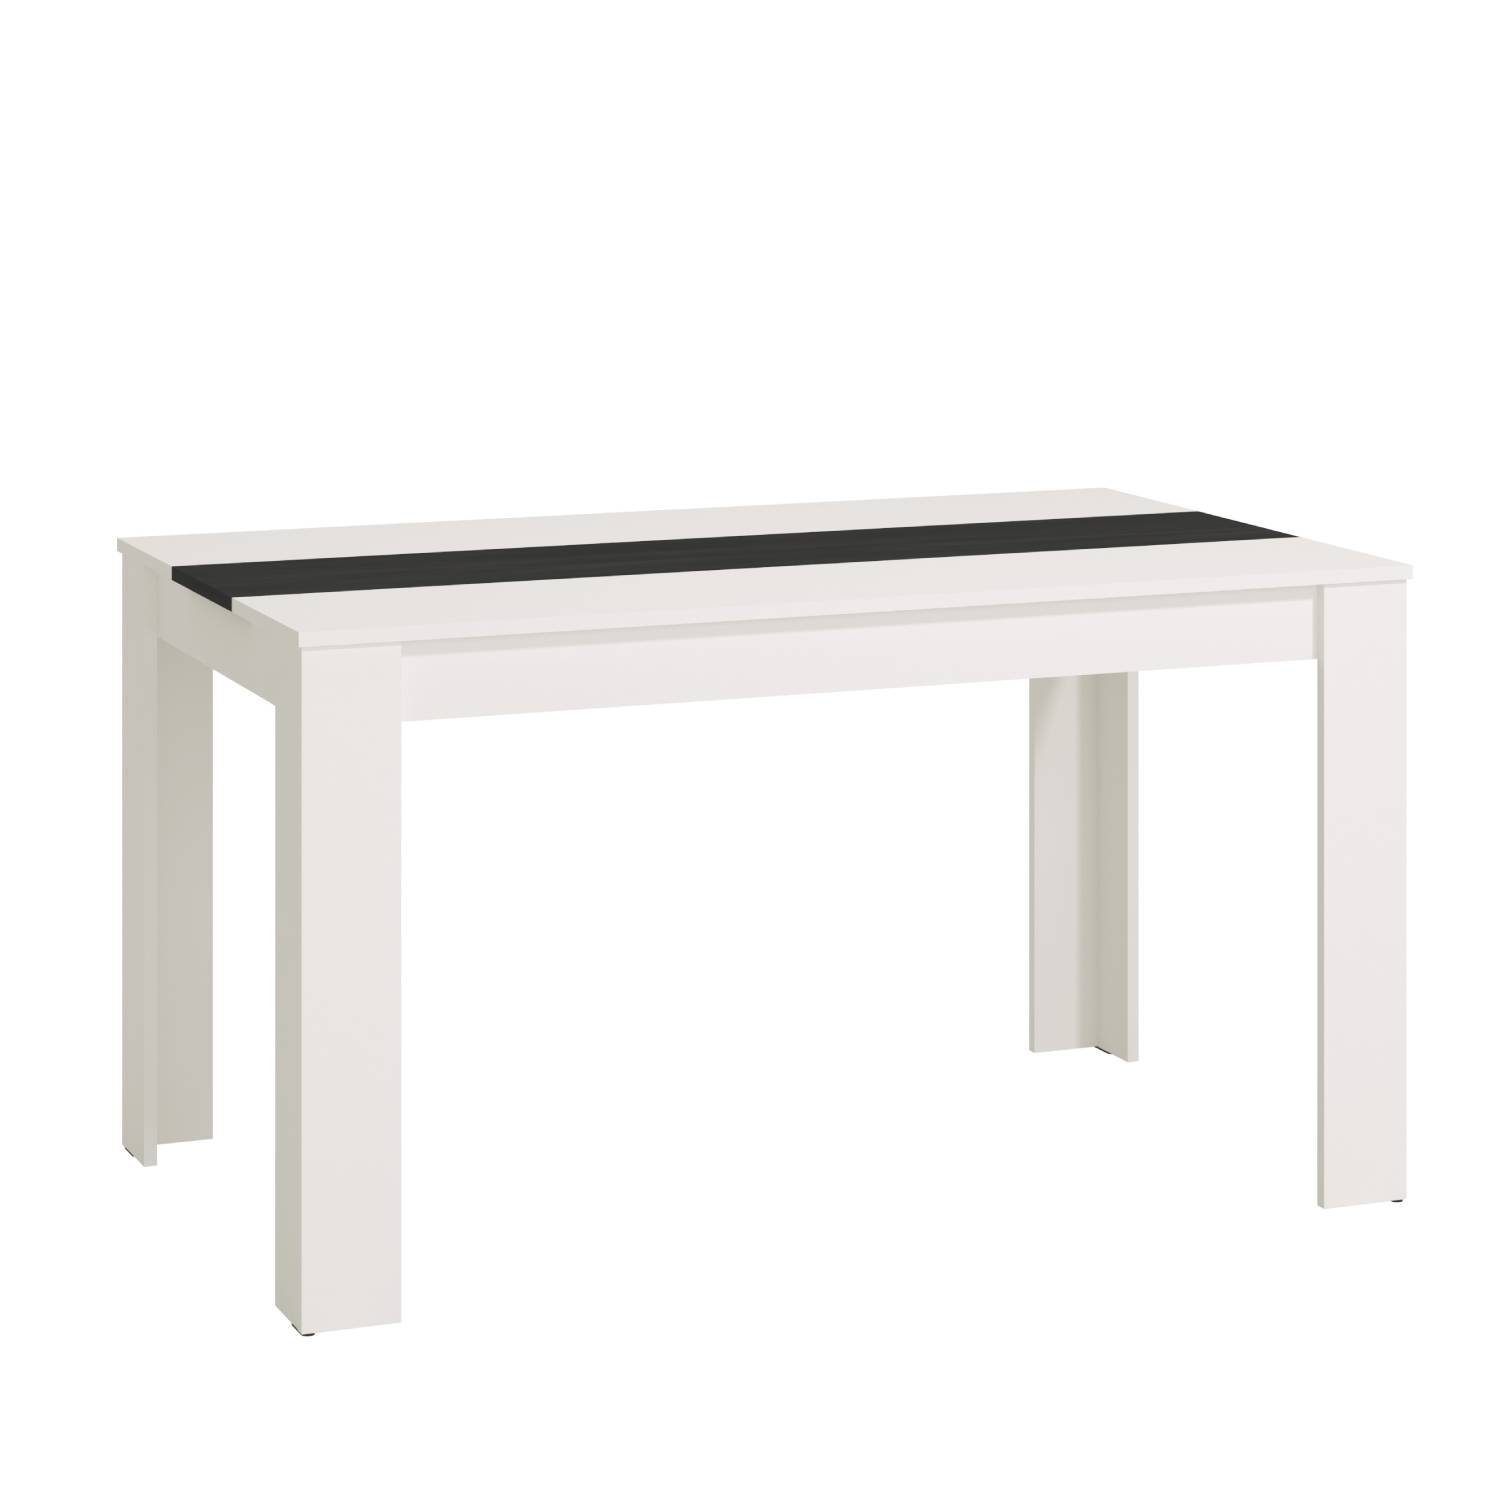 Homestyle4u Esstisch Esszimmertisch Holztisch Küchentisch mehrere Farben 135x80 cm Holz (kein Set) weiß | weiß | weiß | Esstische